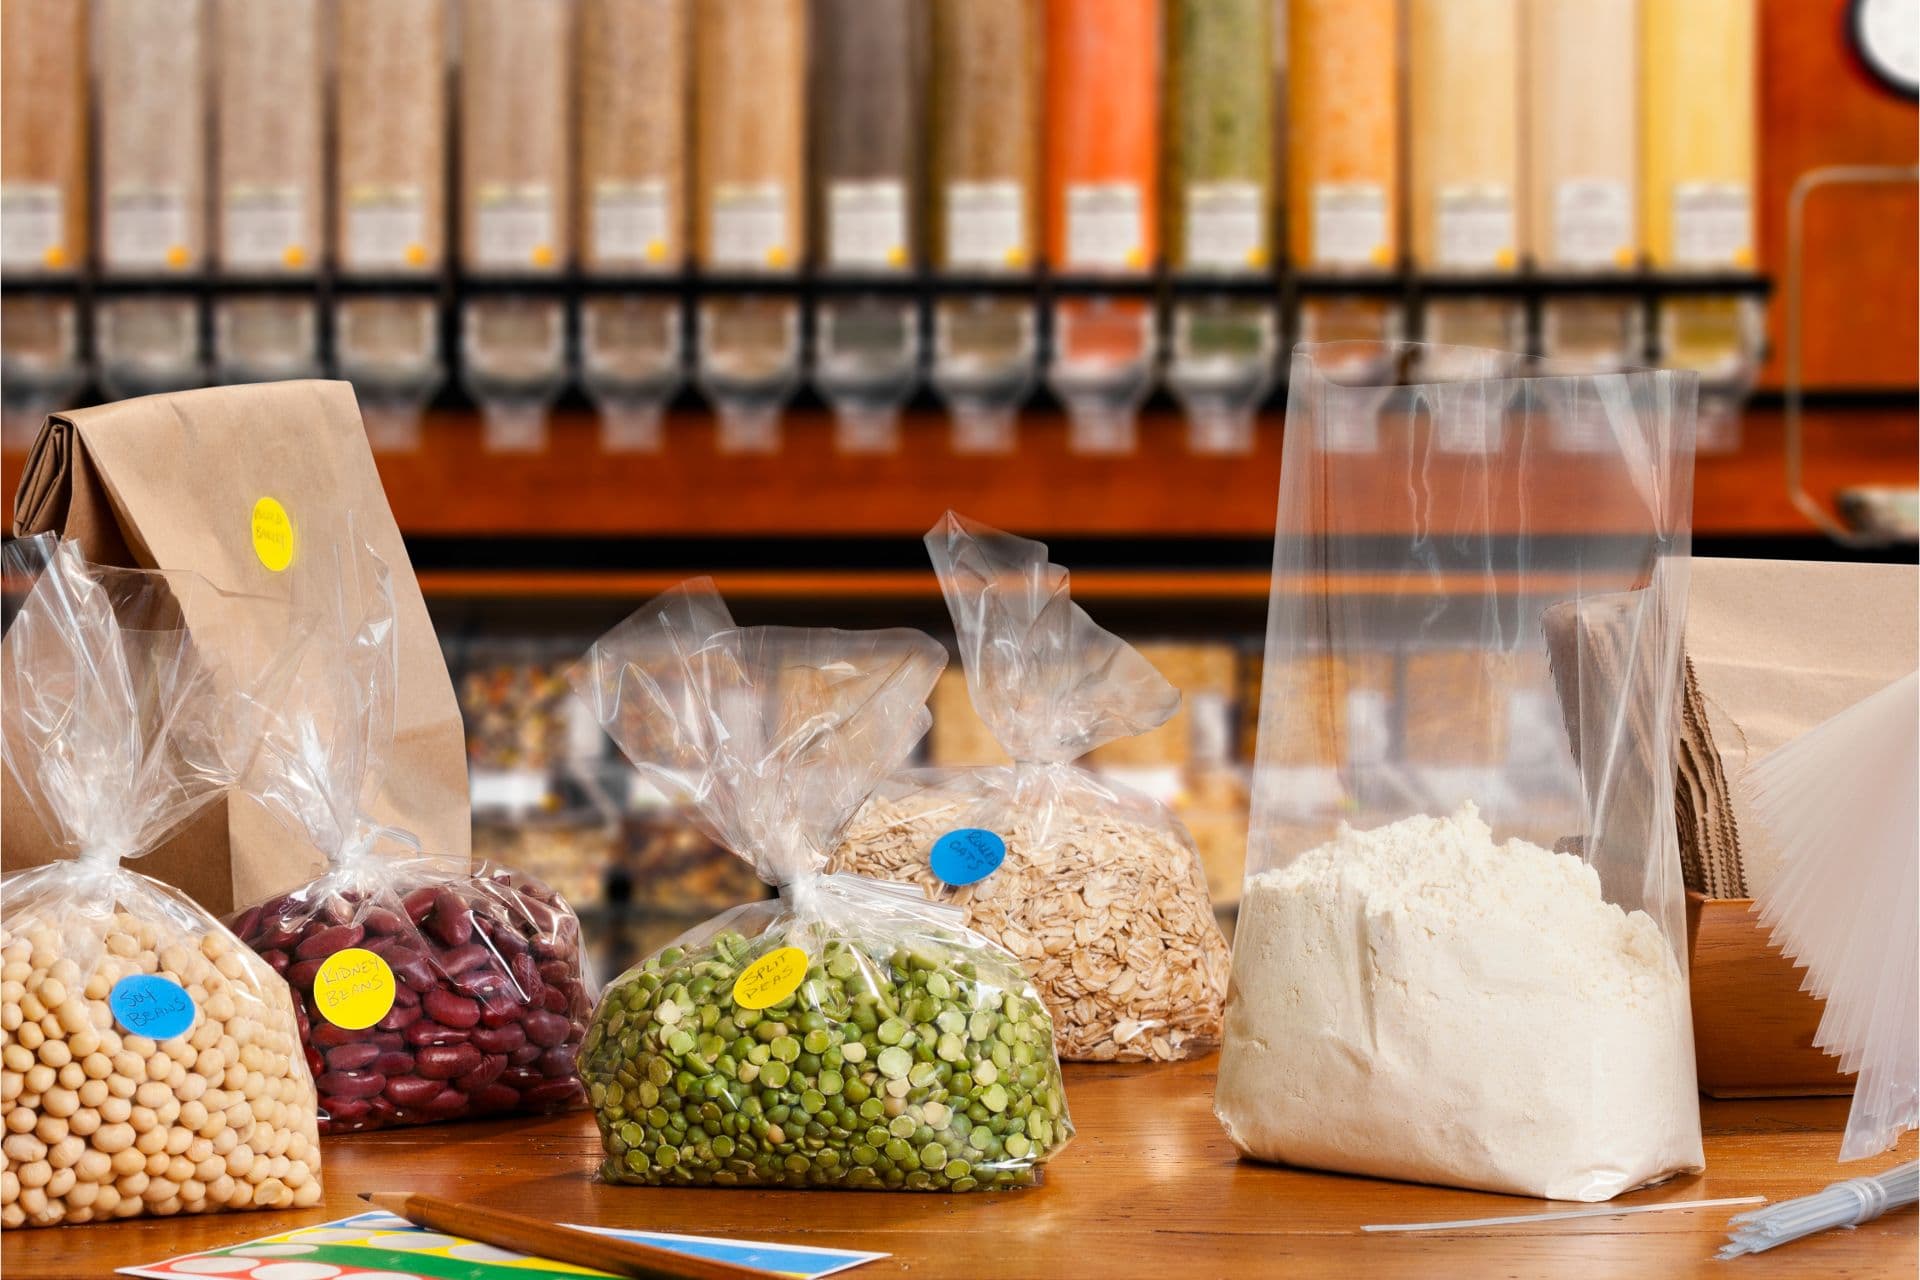 Jak pakować żywność i produkty ekologiczne w sklepie?